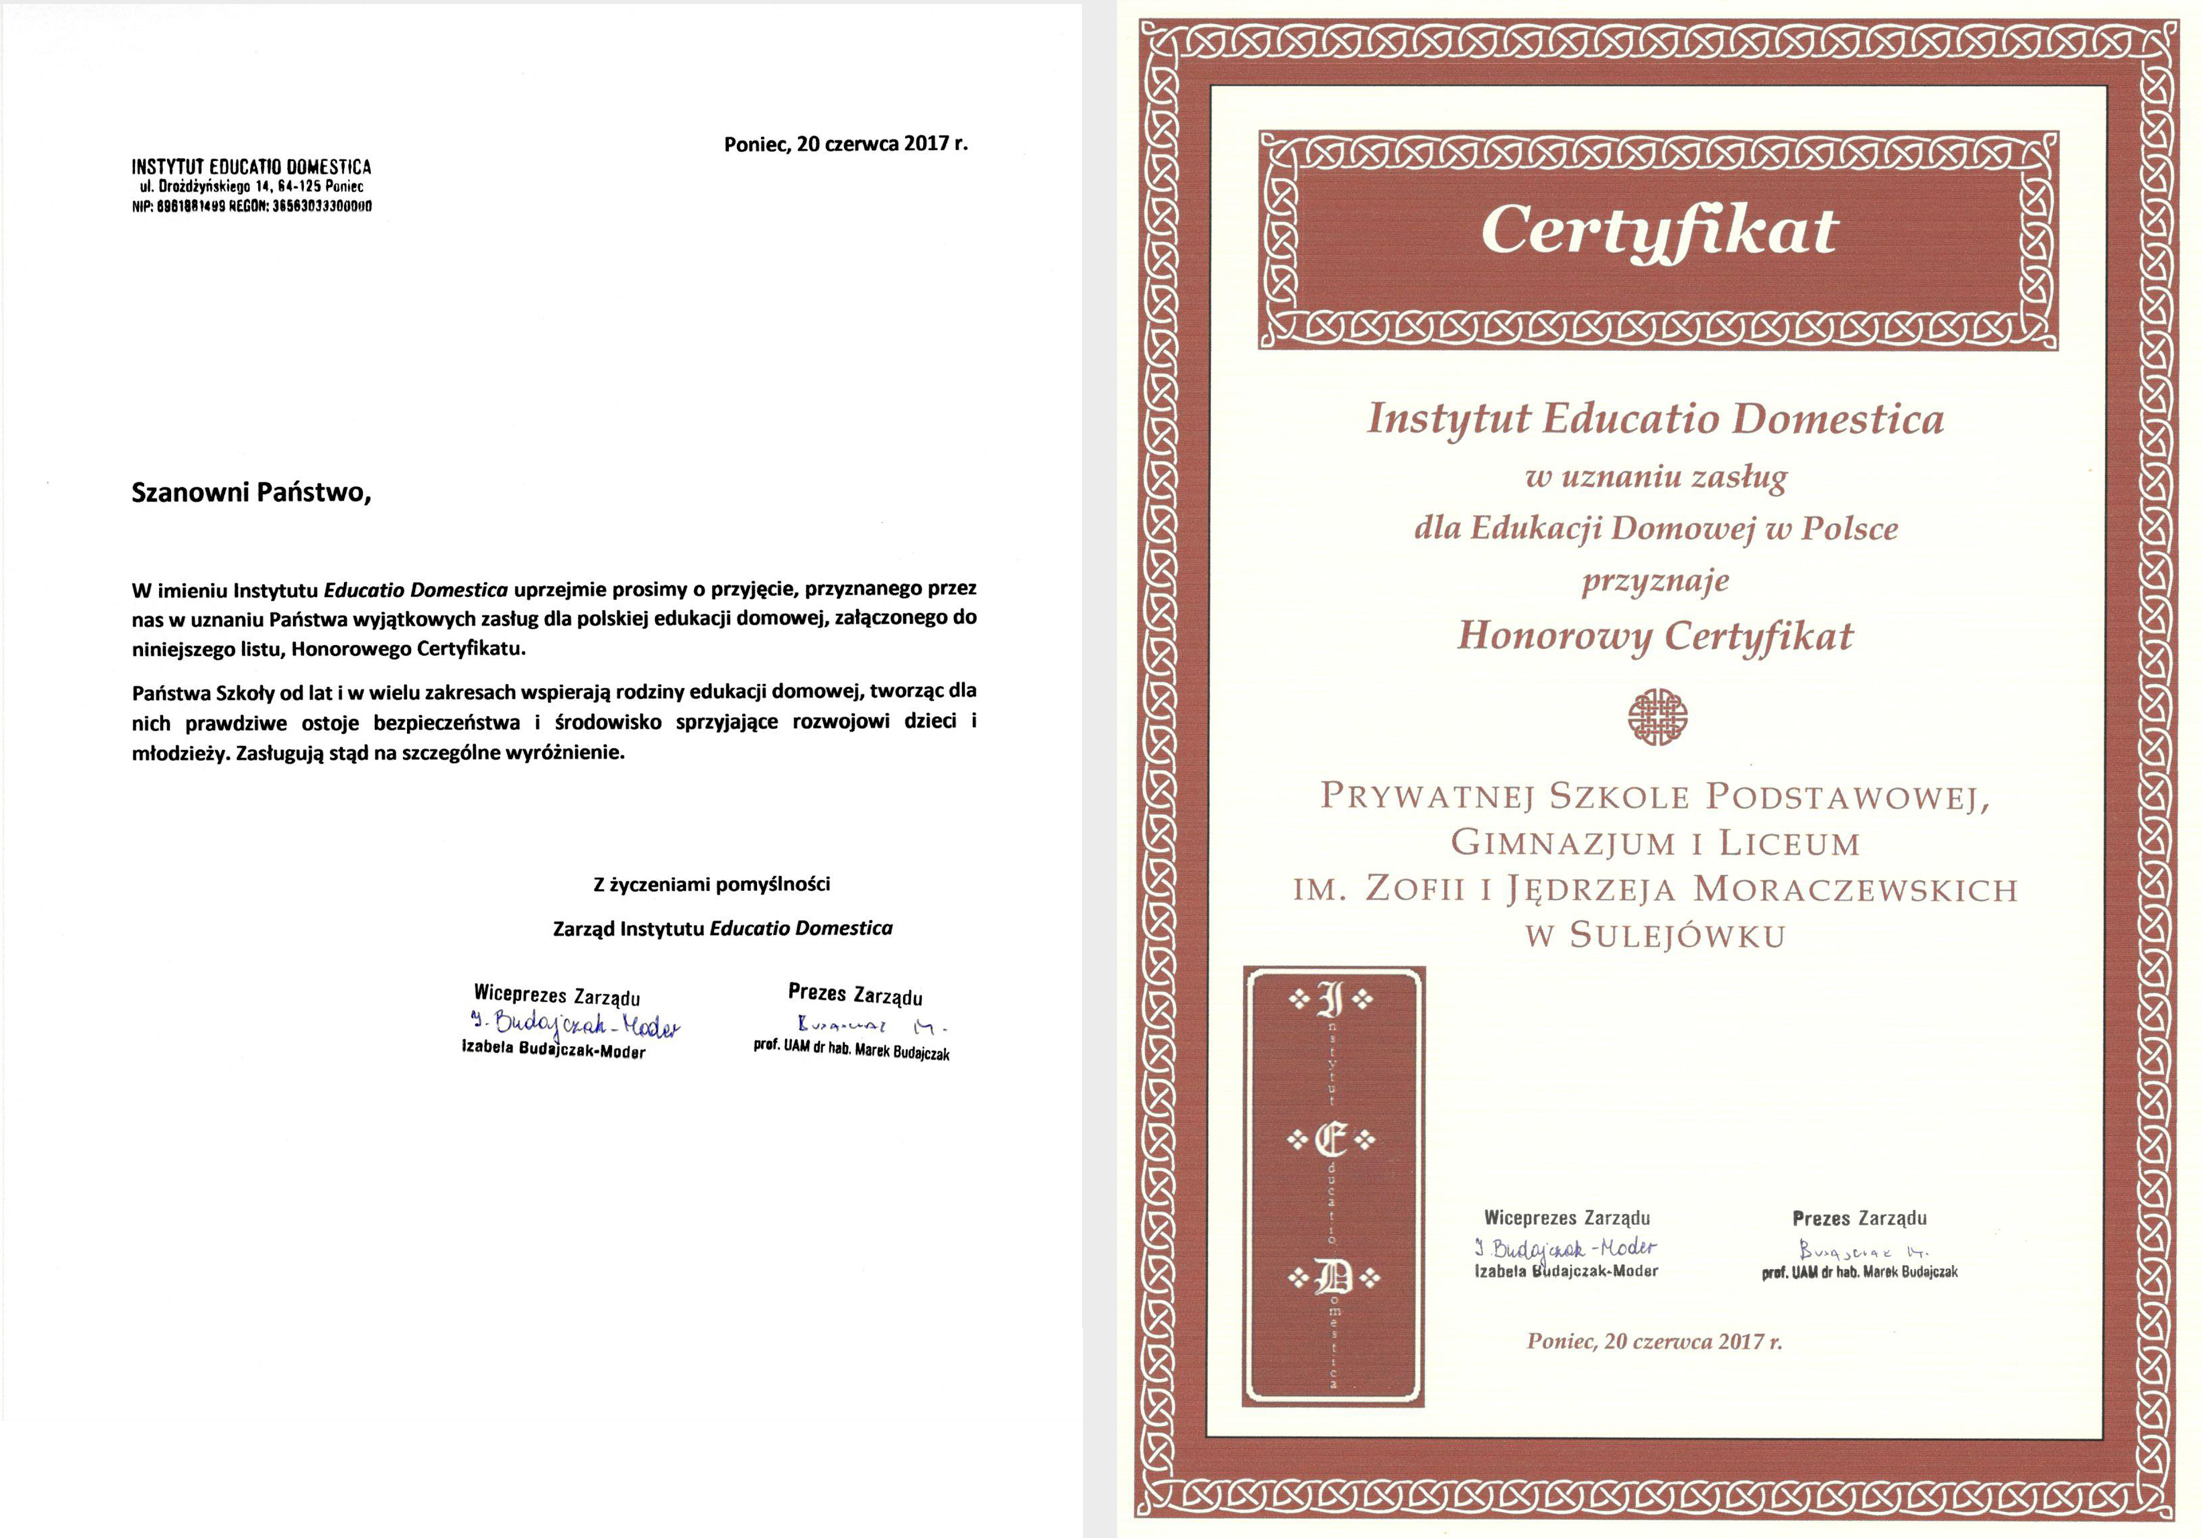 honorowy certyfikat, certyfikat dla szkoły w sulejówku, szkoła w sulejówku, szkoła imienia Moraczewskich, edukacja domowa,